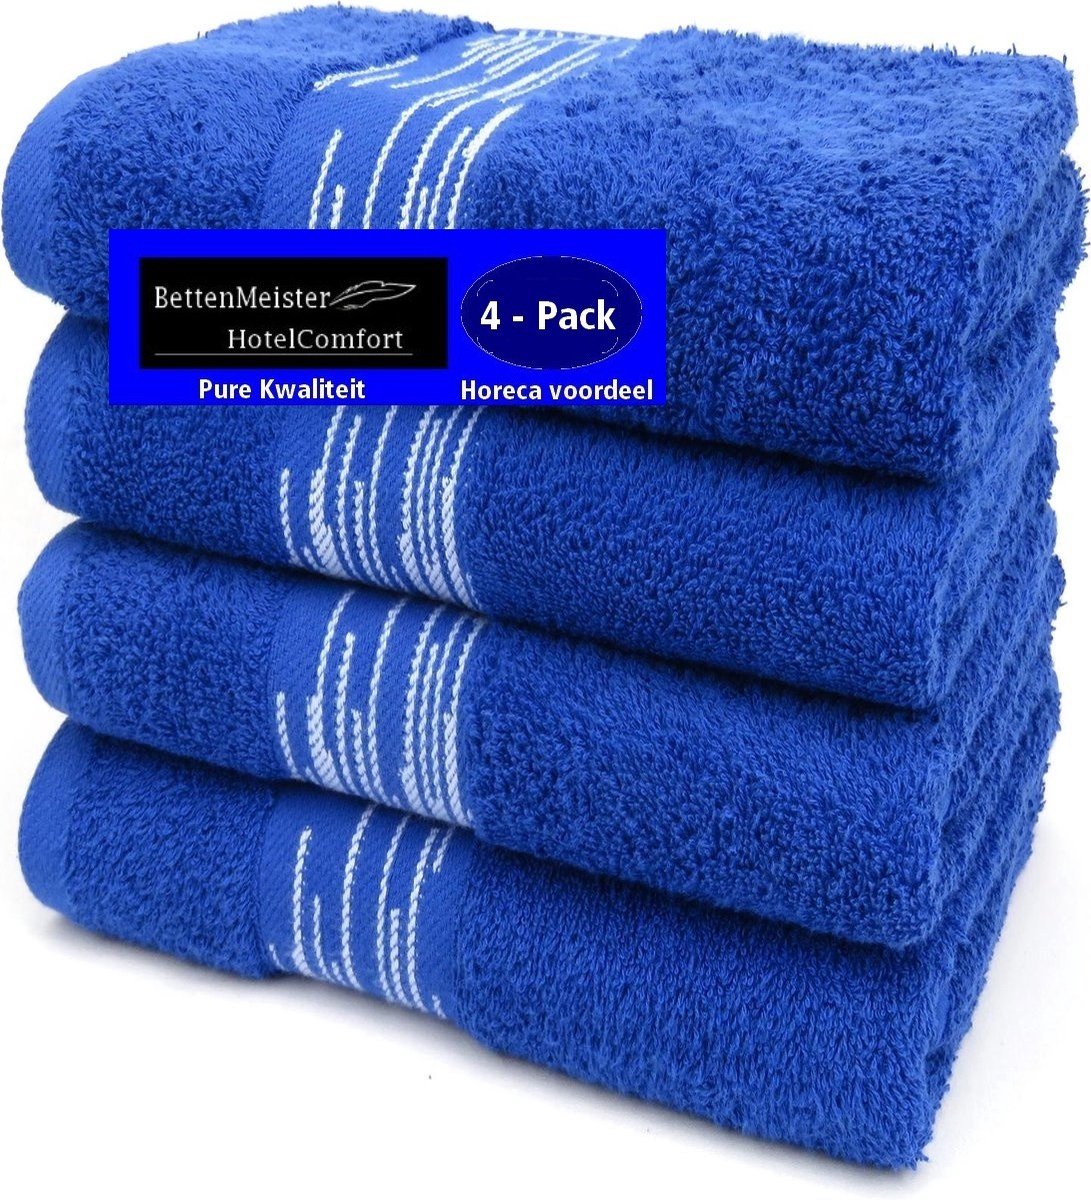 4 Pack Handdoeken - (4 stuks) Essentials 550g. M² 50x100cm blauw - Katoen badstof